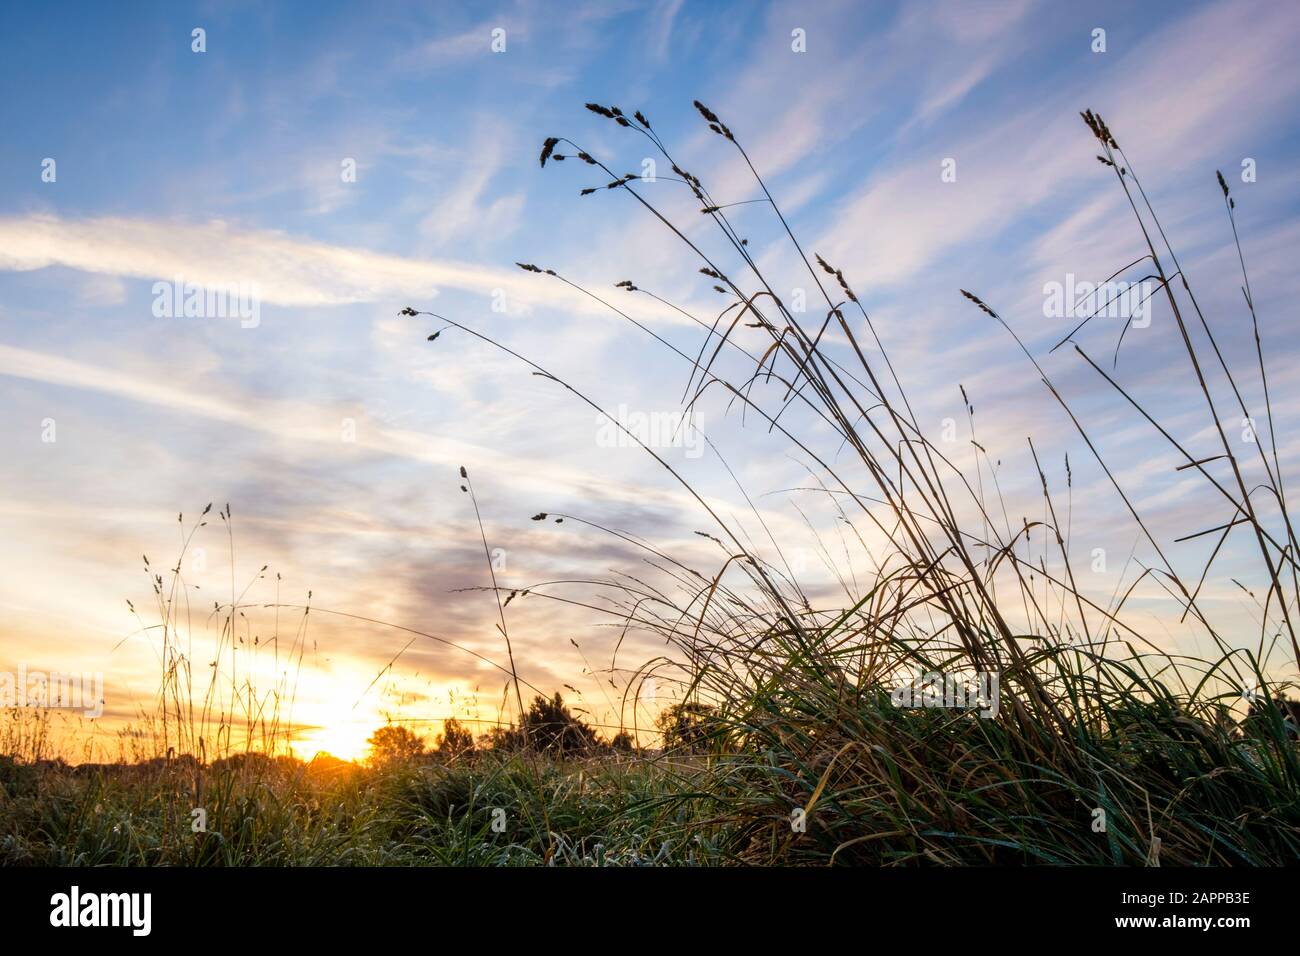 Paysage de l'aube. Lever du soleil sur un champ dans la campagne vue à partir d'un angle bas avec l'herbe s'élevant contre le ciel. Notinghamshire, Angleterre, Royaume-Uni Banque D'Images